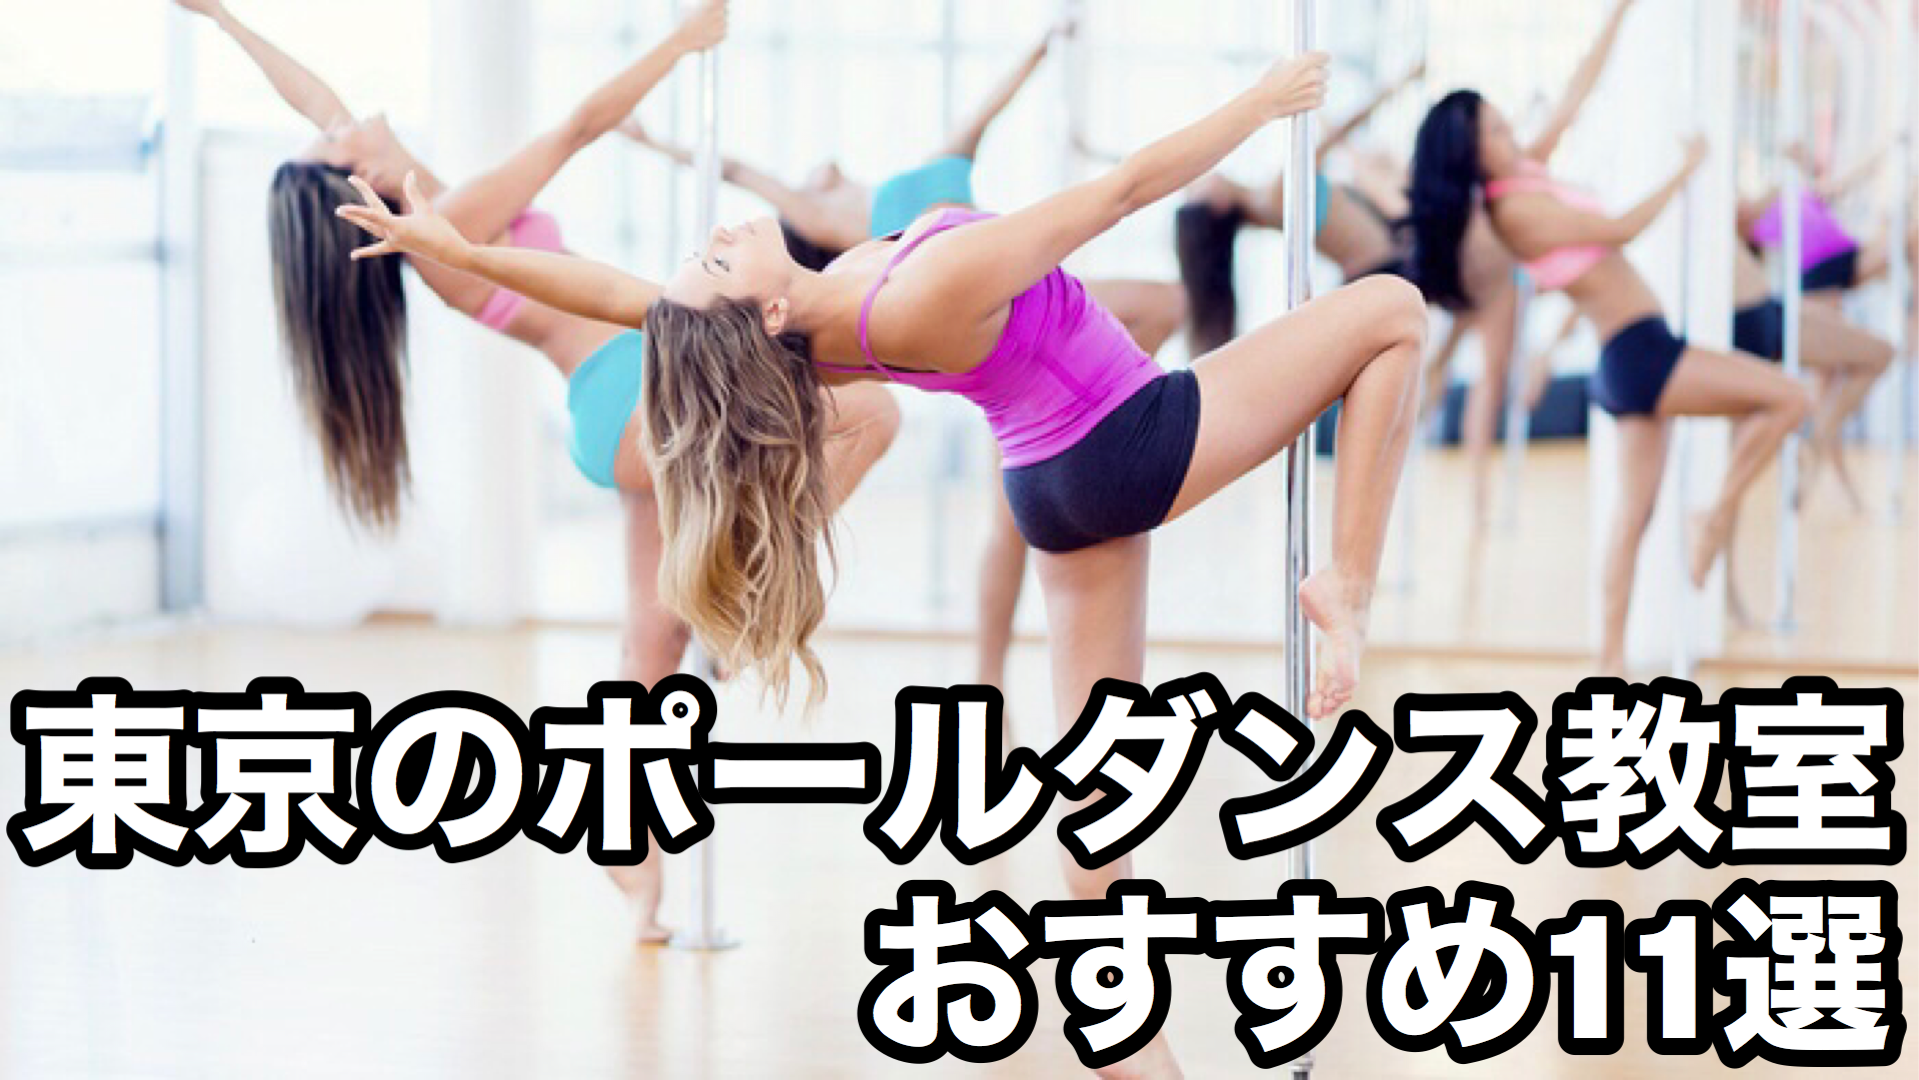 2020年最新版 初心者歓迎 東京のポールダンス教室11選 Pole Is My Life